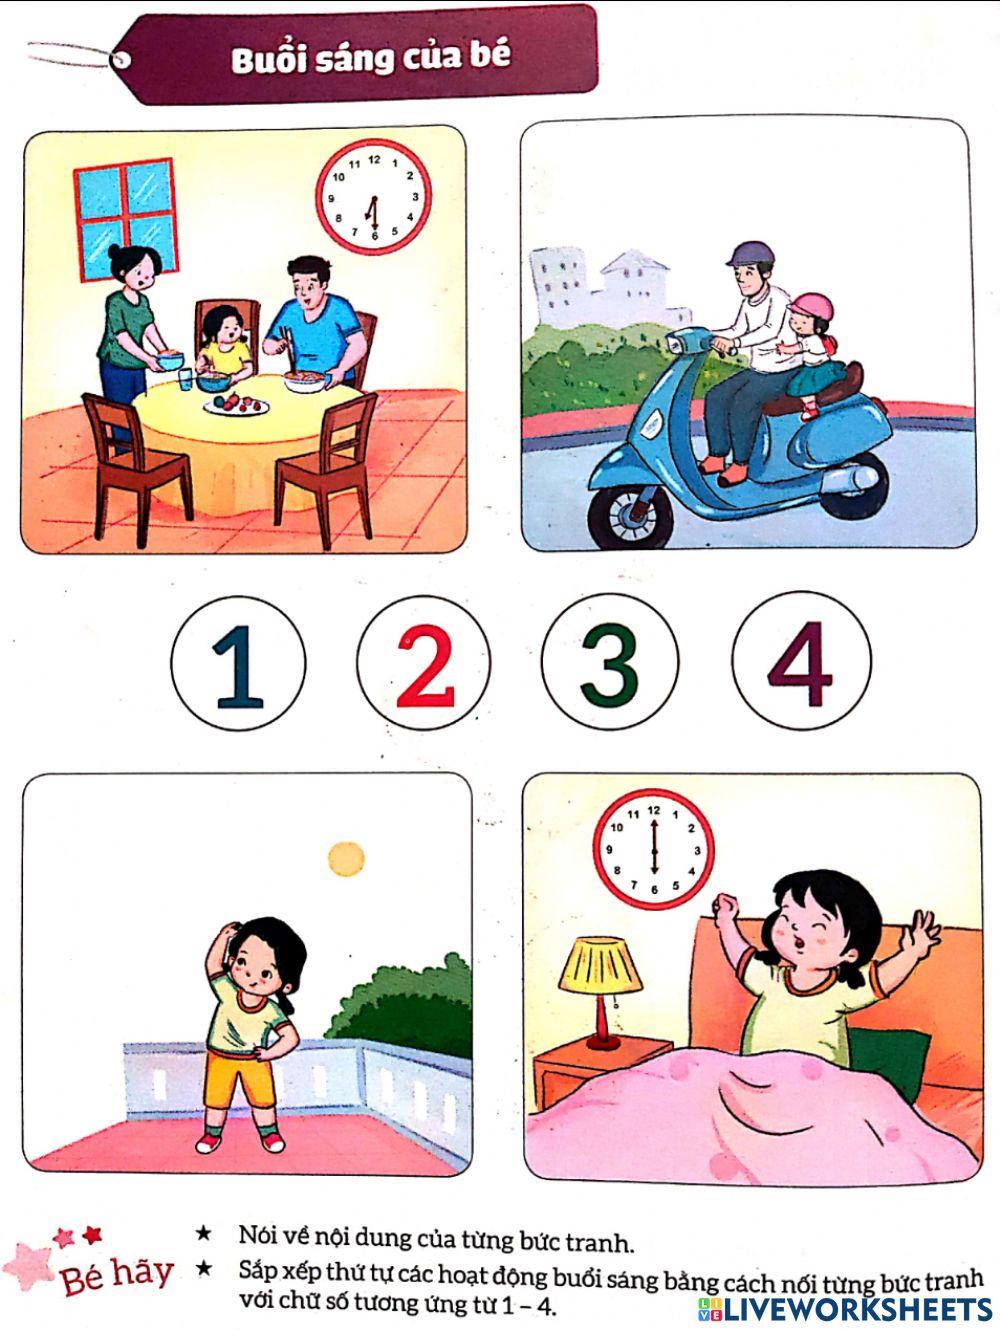 Sắp xếp các hoạt động buổi sáng của bé bằng cách nối các hoạt động với số thứ tự từ 1 đến 4